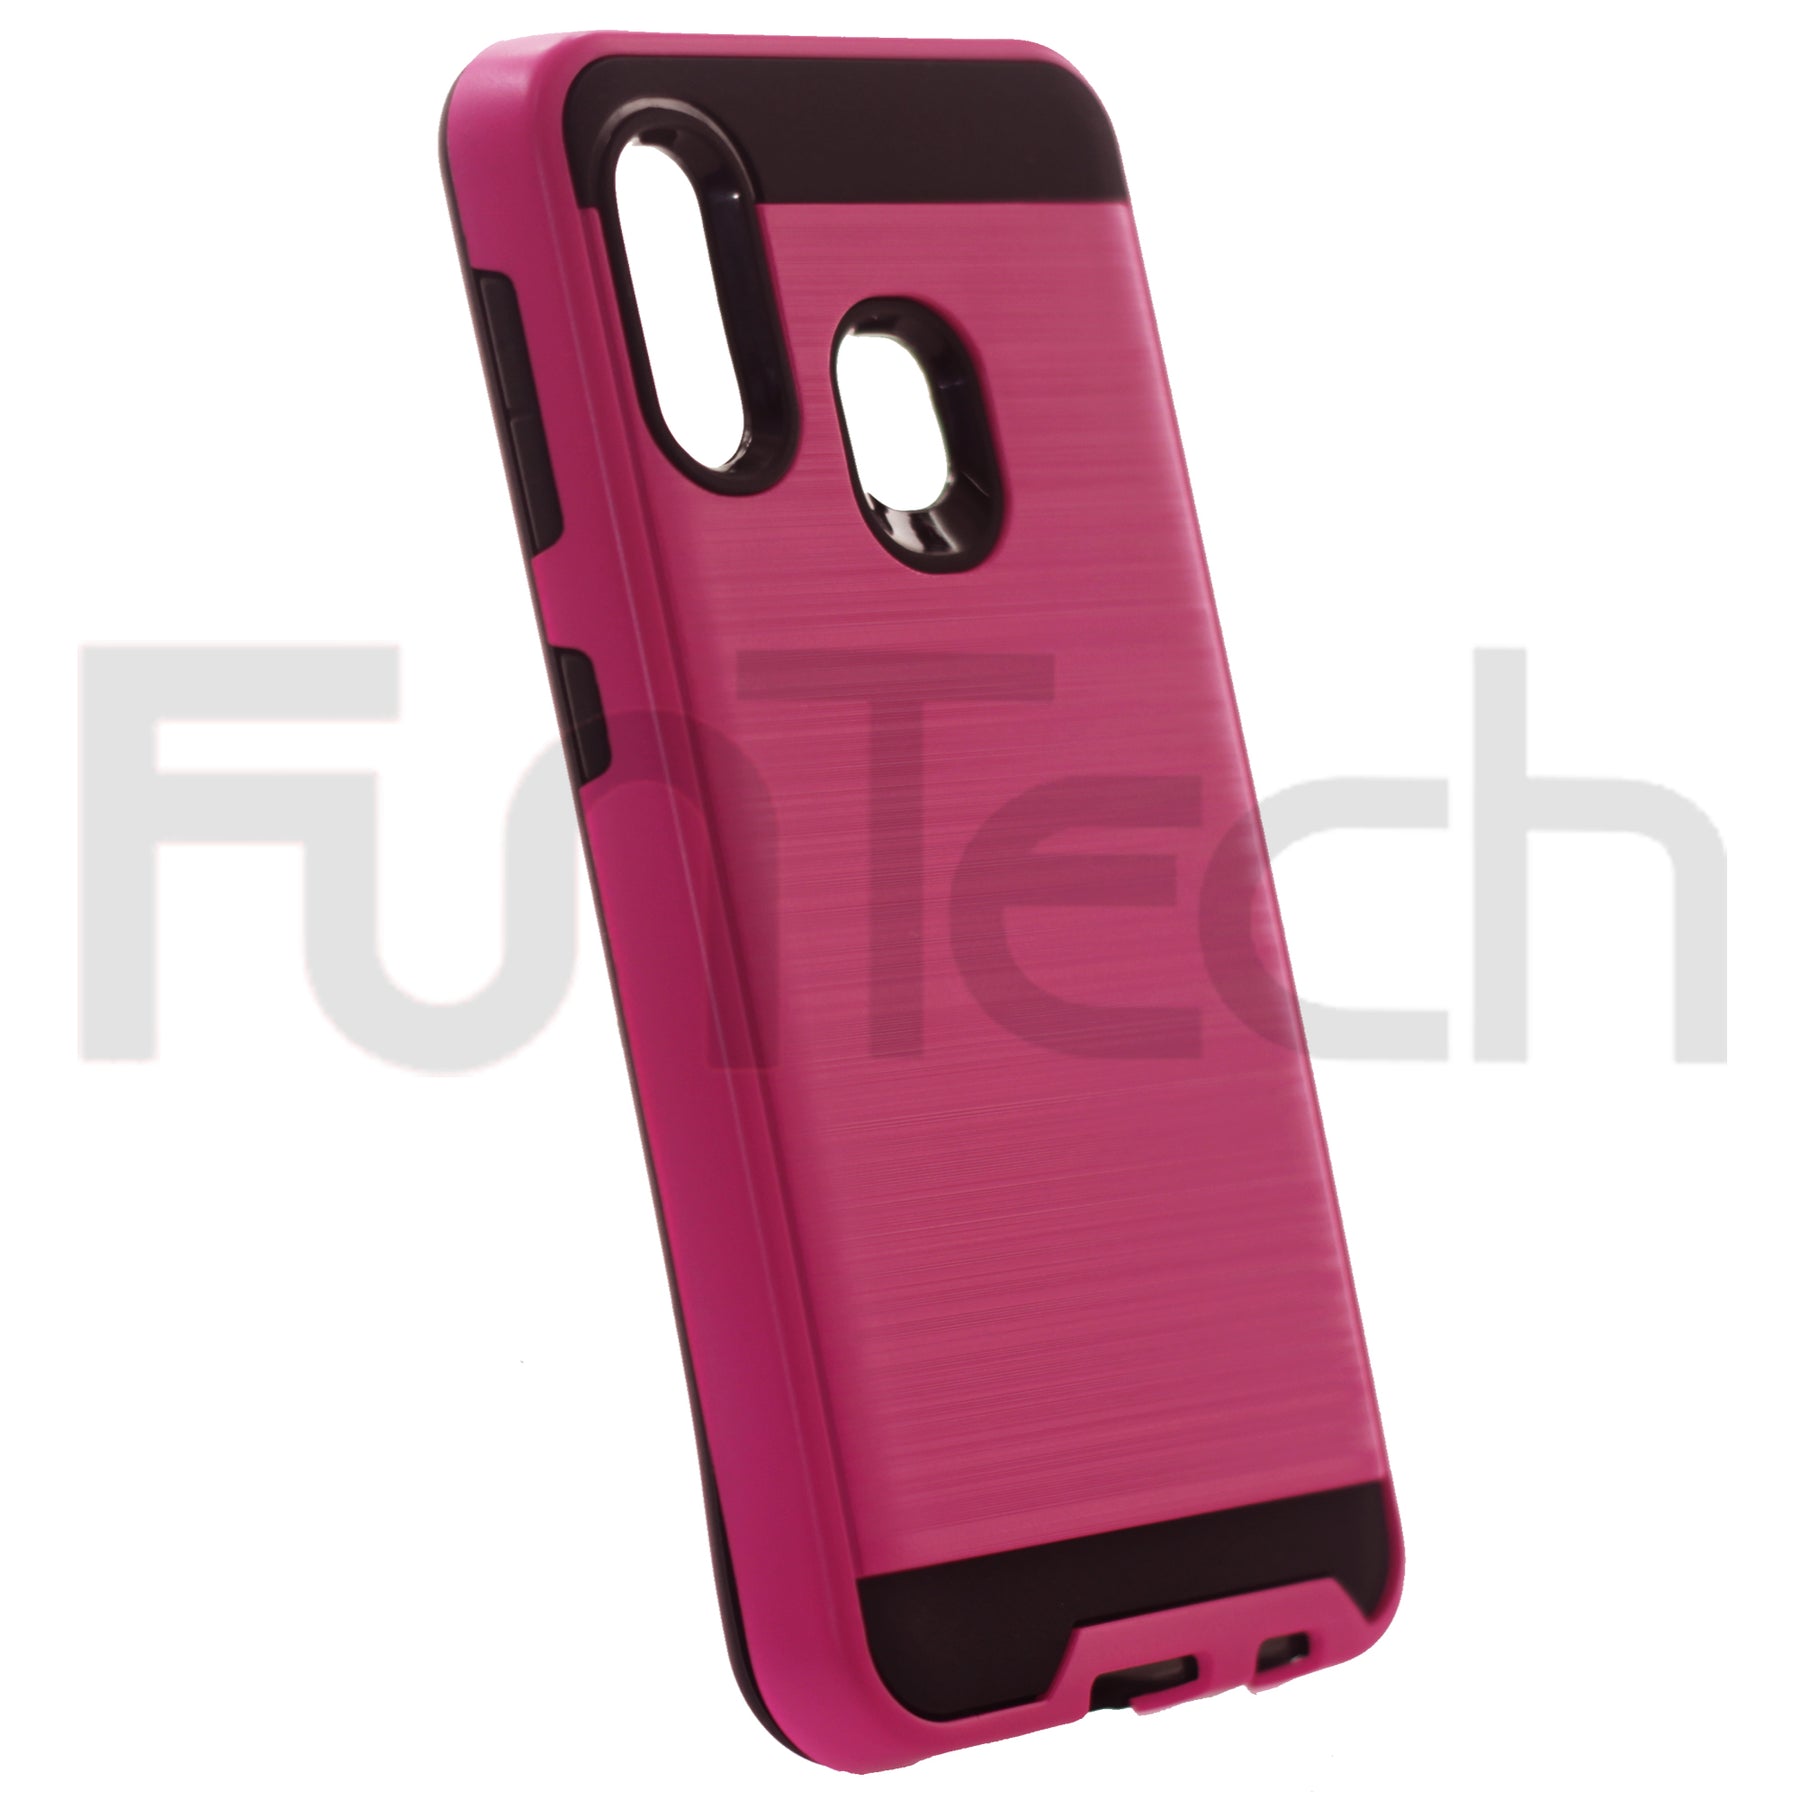 Samsung A10E, A20E, Slim Armor Case, Color Pink.